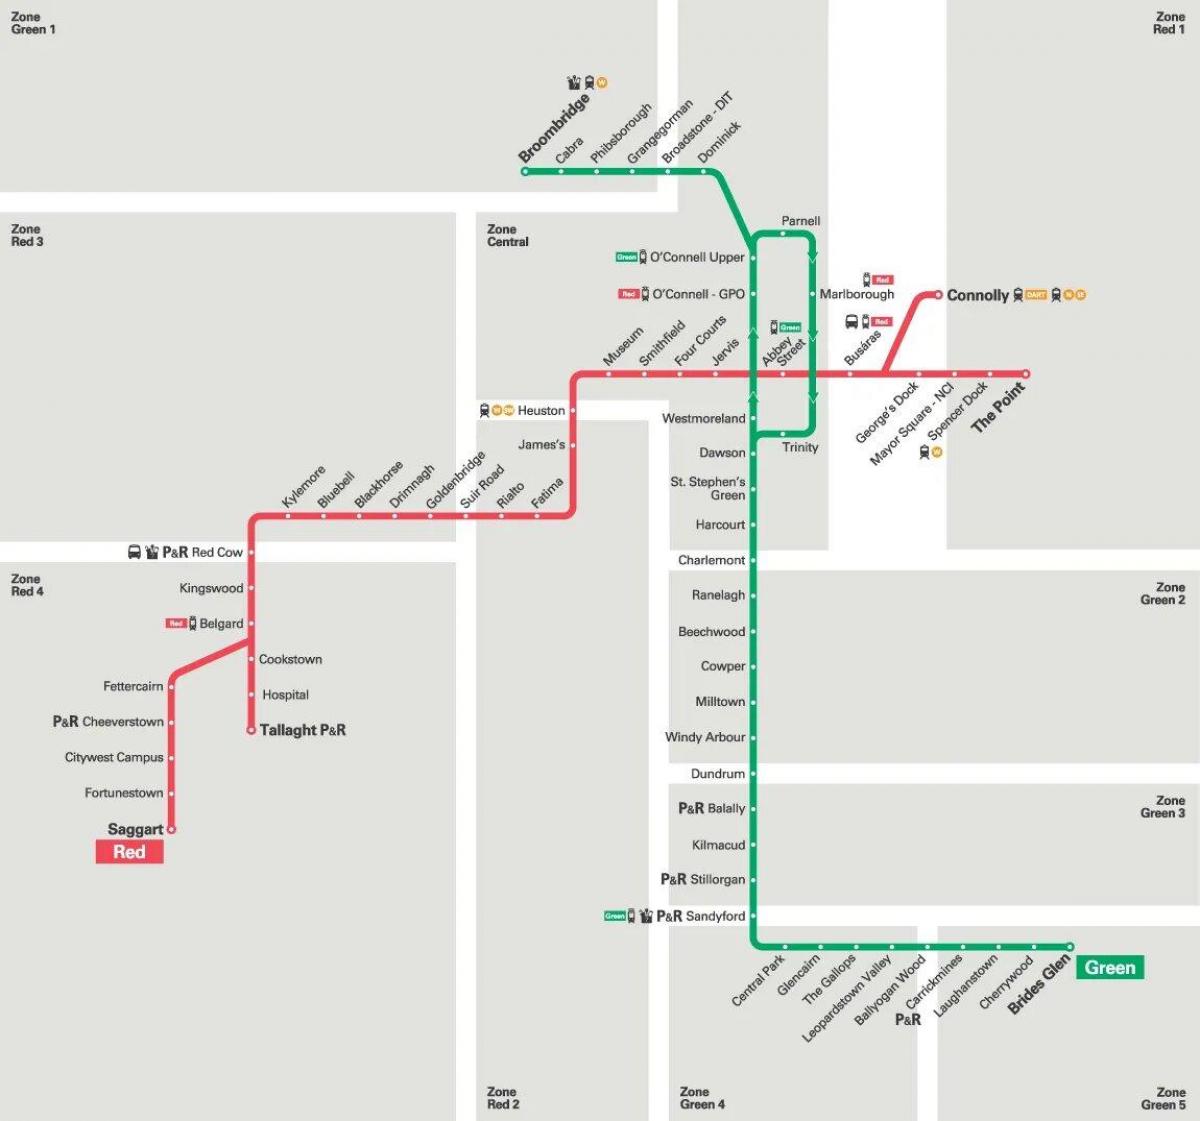 Mappa delle stazioni del tram di Dublino